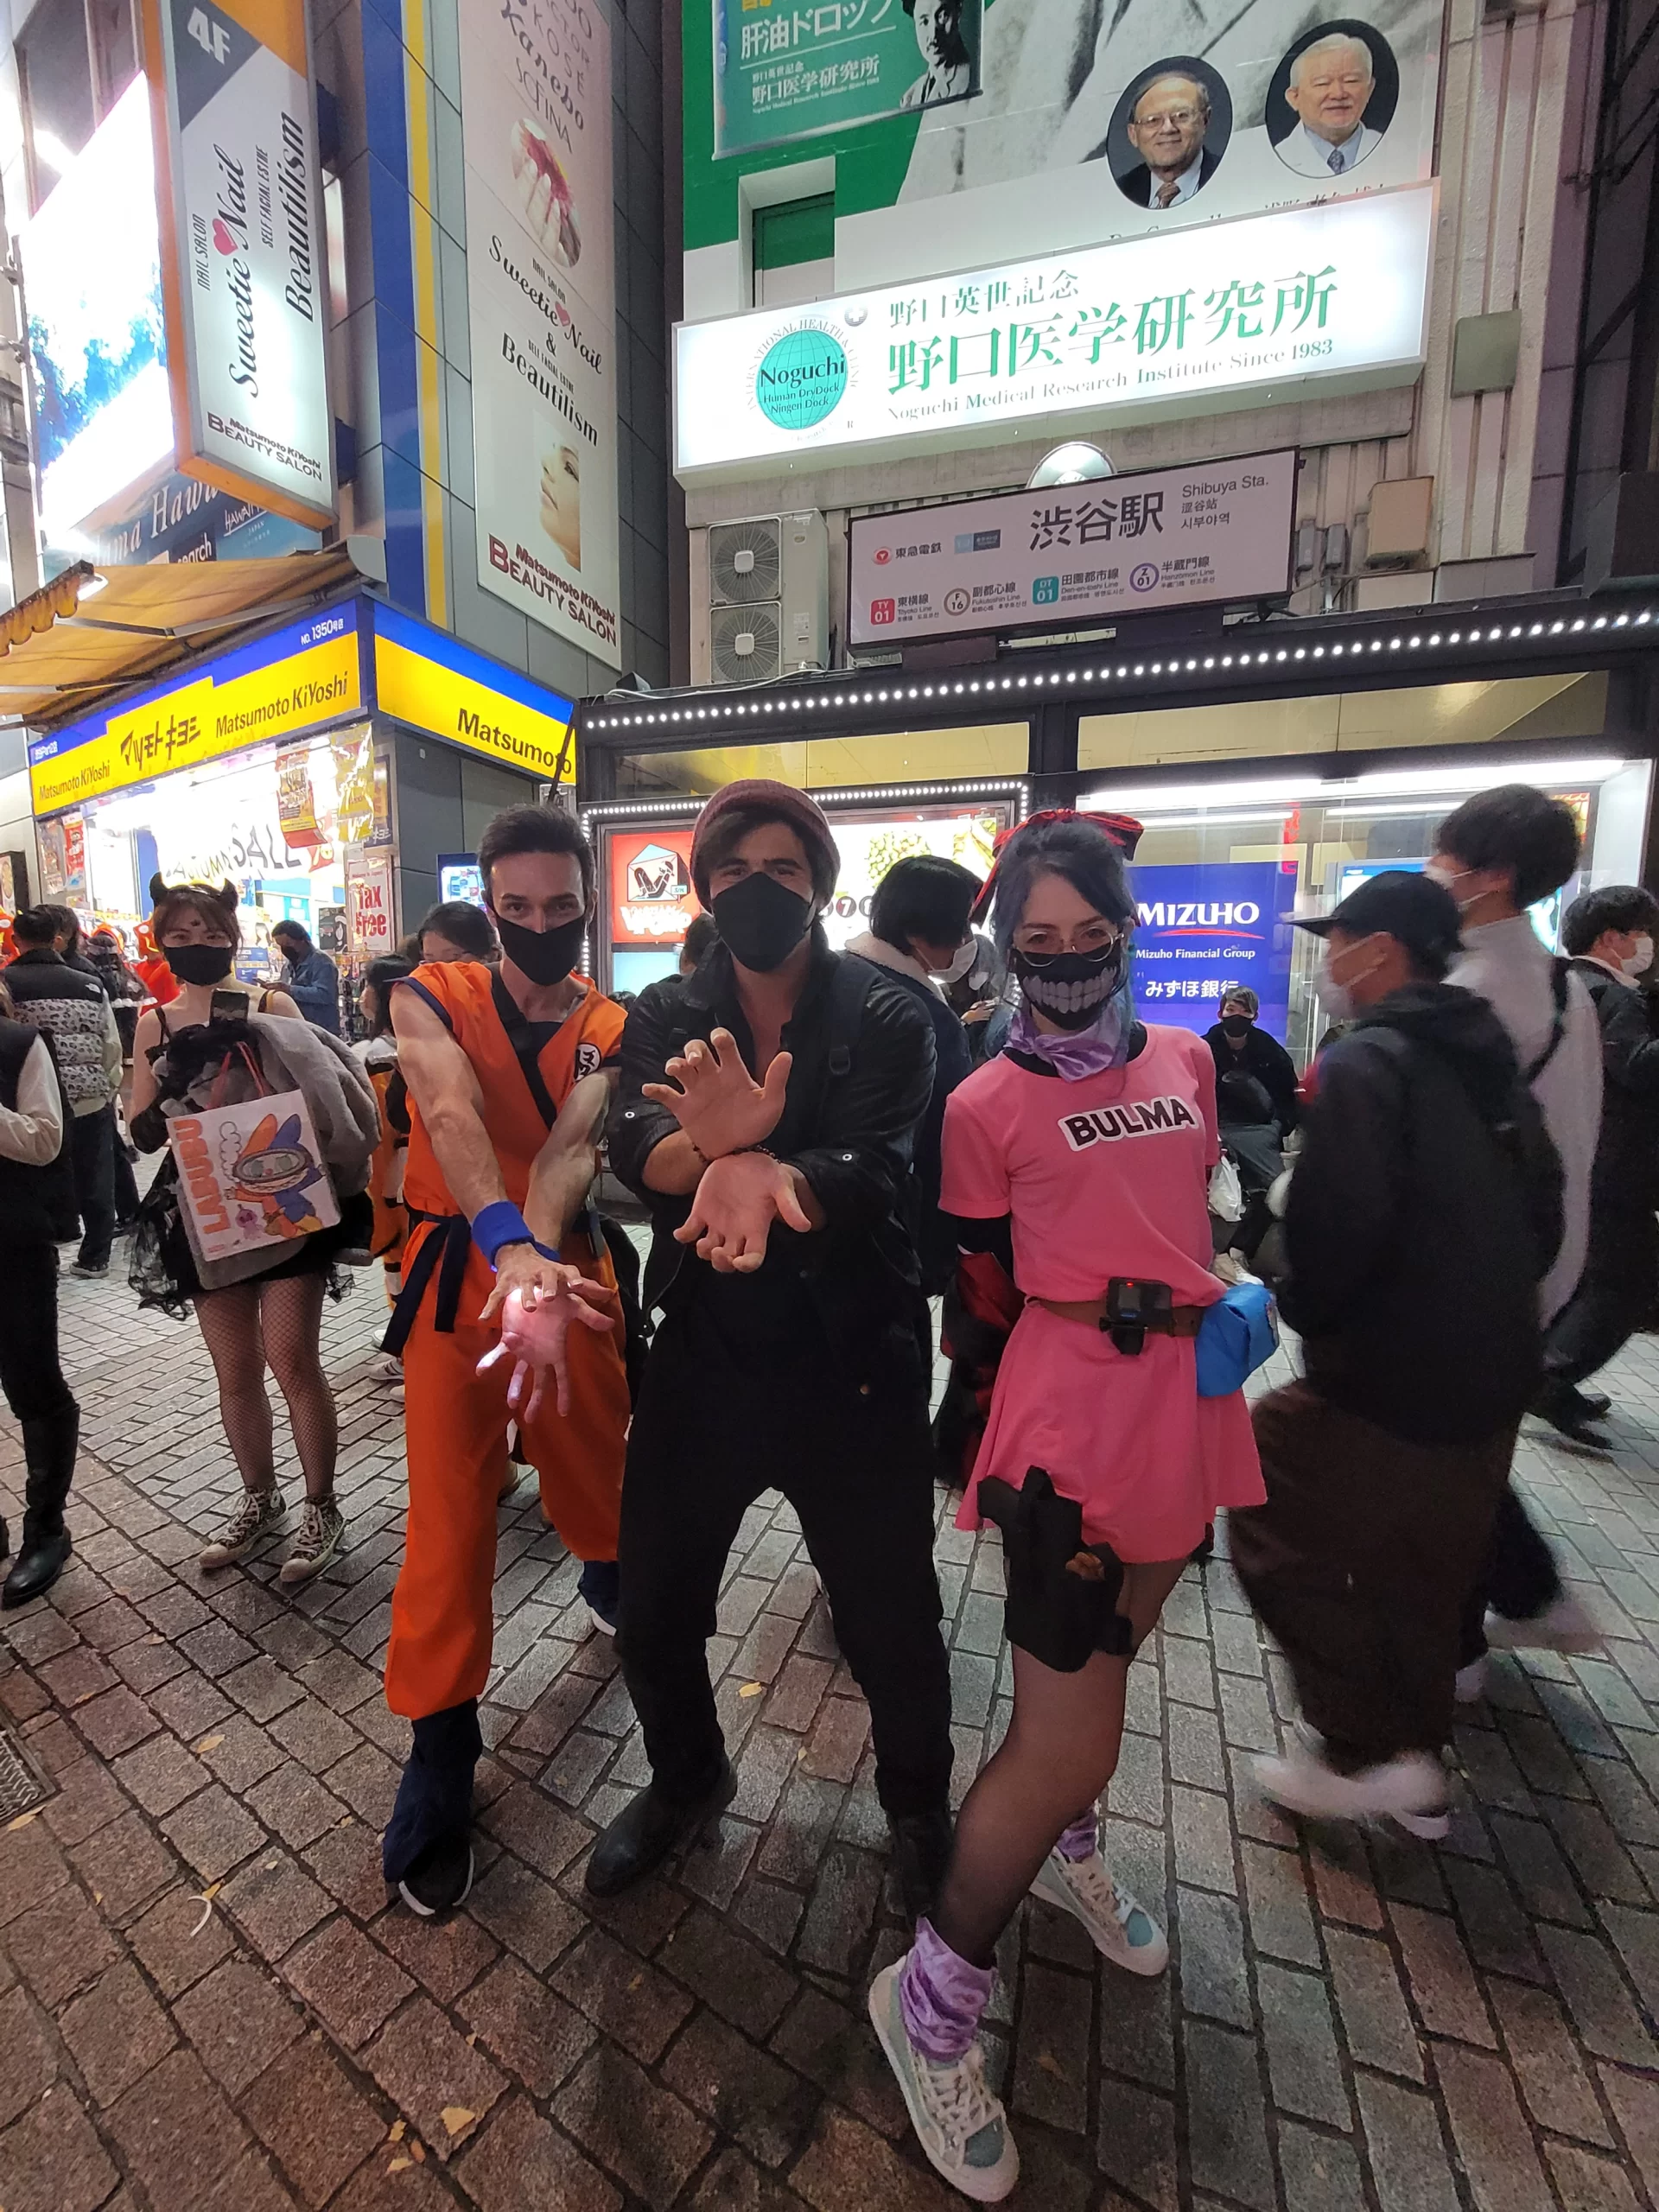 Doing the kamehameha wave with Goku and Bulma cosplayers in Shibuya on Halloween night.